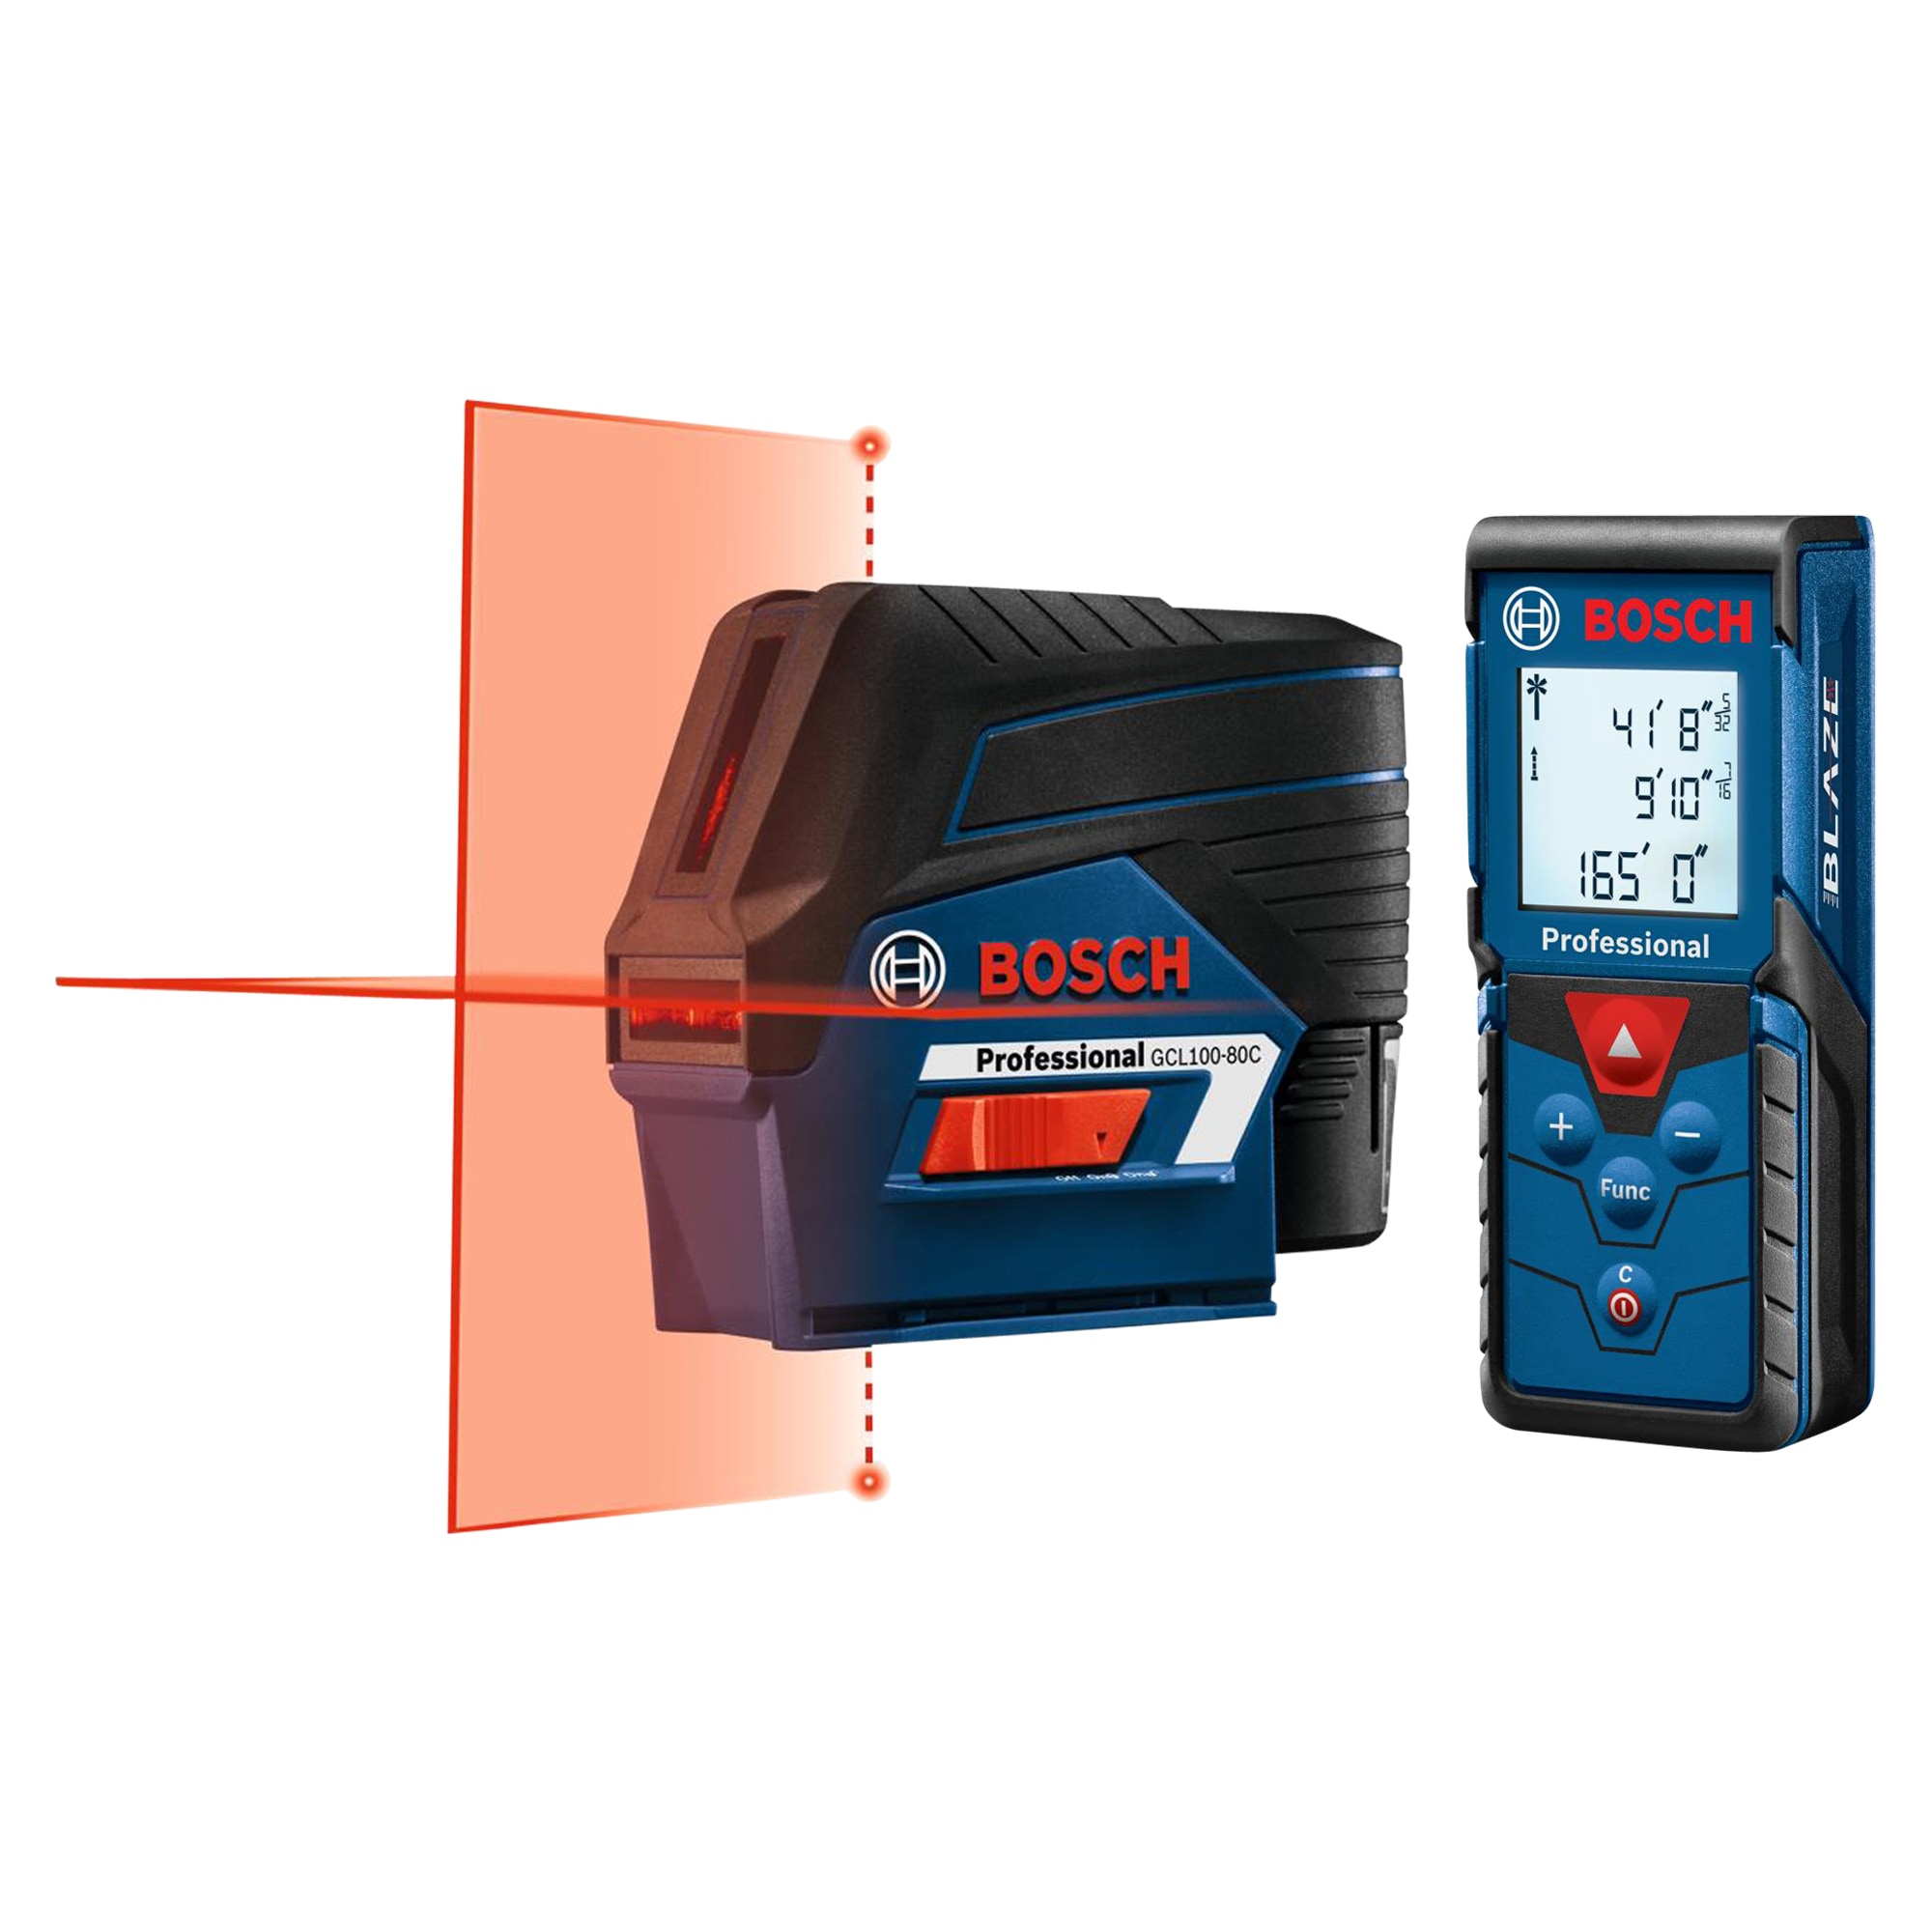 Bosch 100 ft. Outdoor Laser Level w/ BLAZE 165 ft. Indoor Laser Distance Measurer